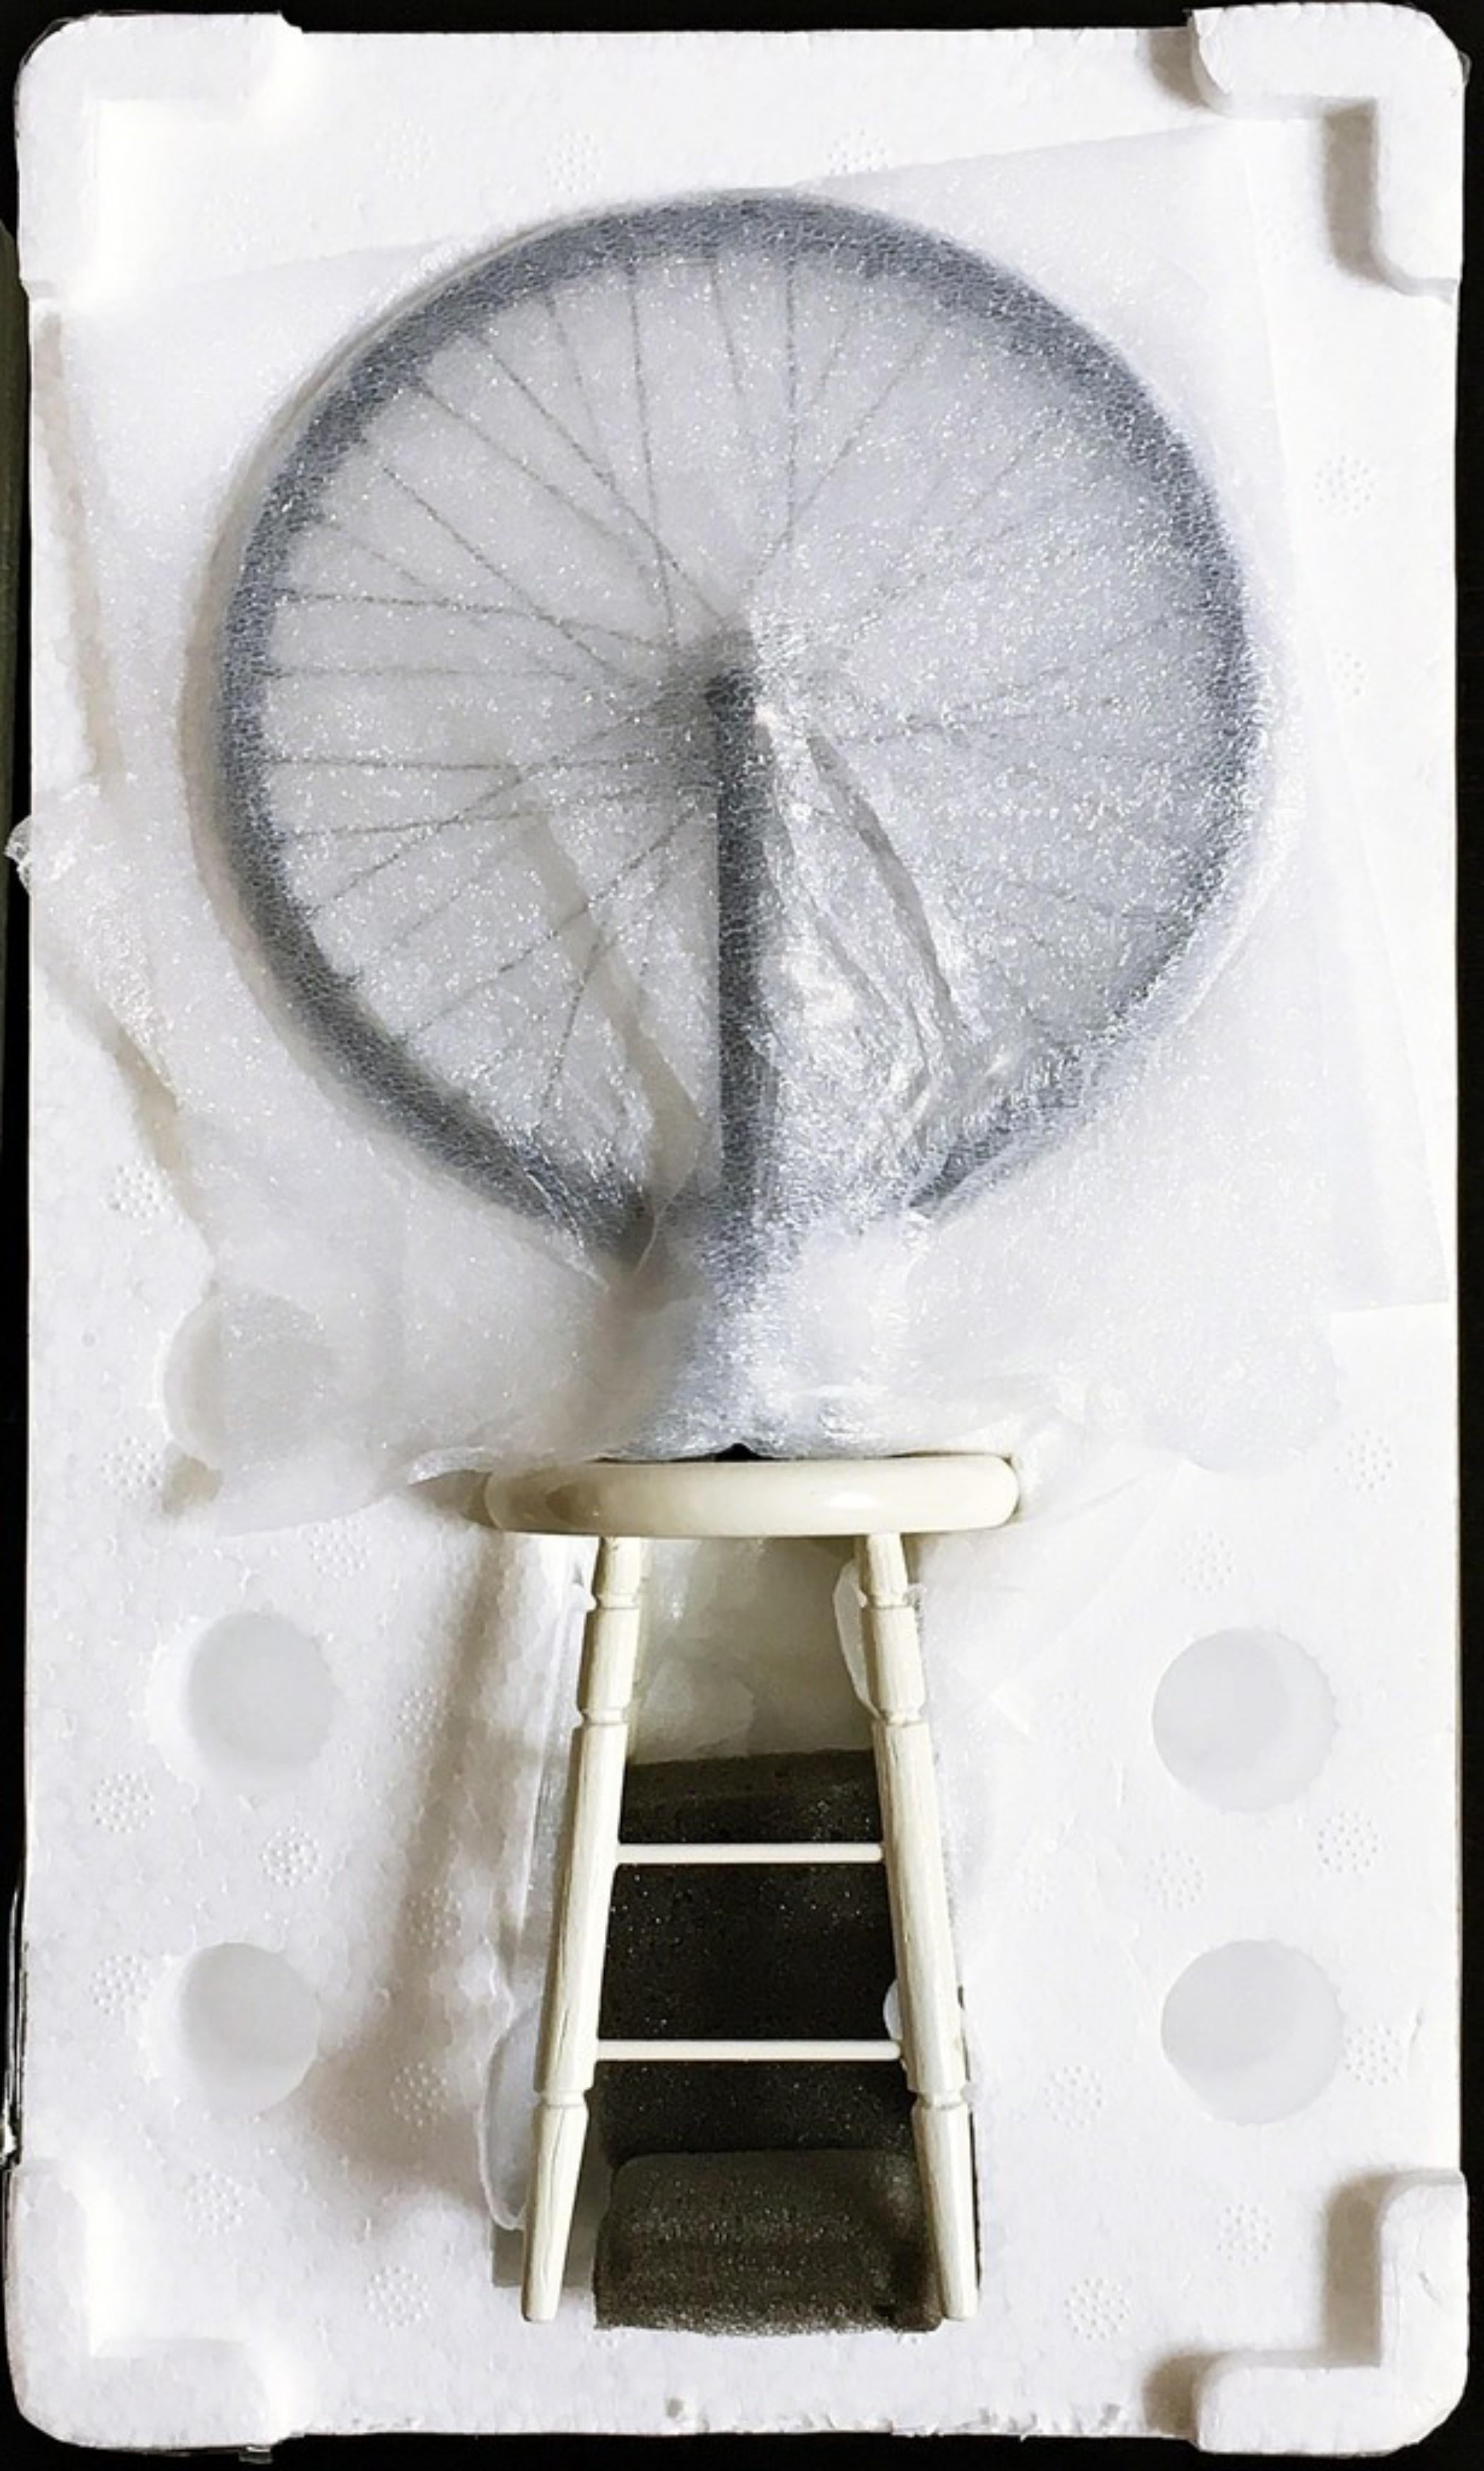 Nach Marcel Duchamp
Nachbildung eines Fahrrads aus dem Philadelphia Museum (Nachlass genehmigt), 2002
Rad und lackiertes Holz. Im Originalkarton
11 × 6 1/2 × 3 4/5 Zoll
In der Originalverpackung, die exklusiv für das Philadelphia Museum of Art in